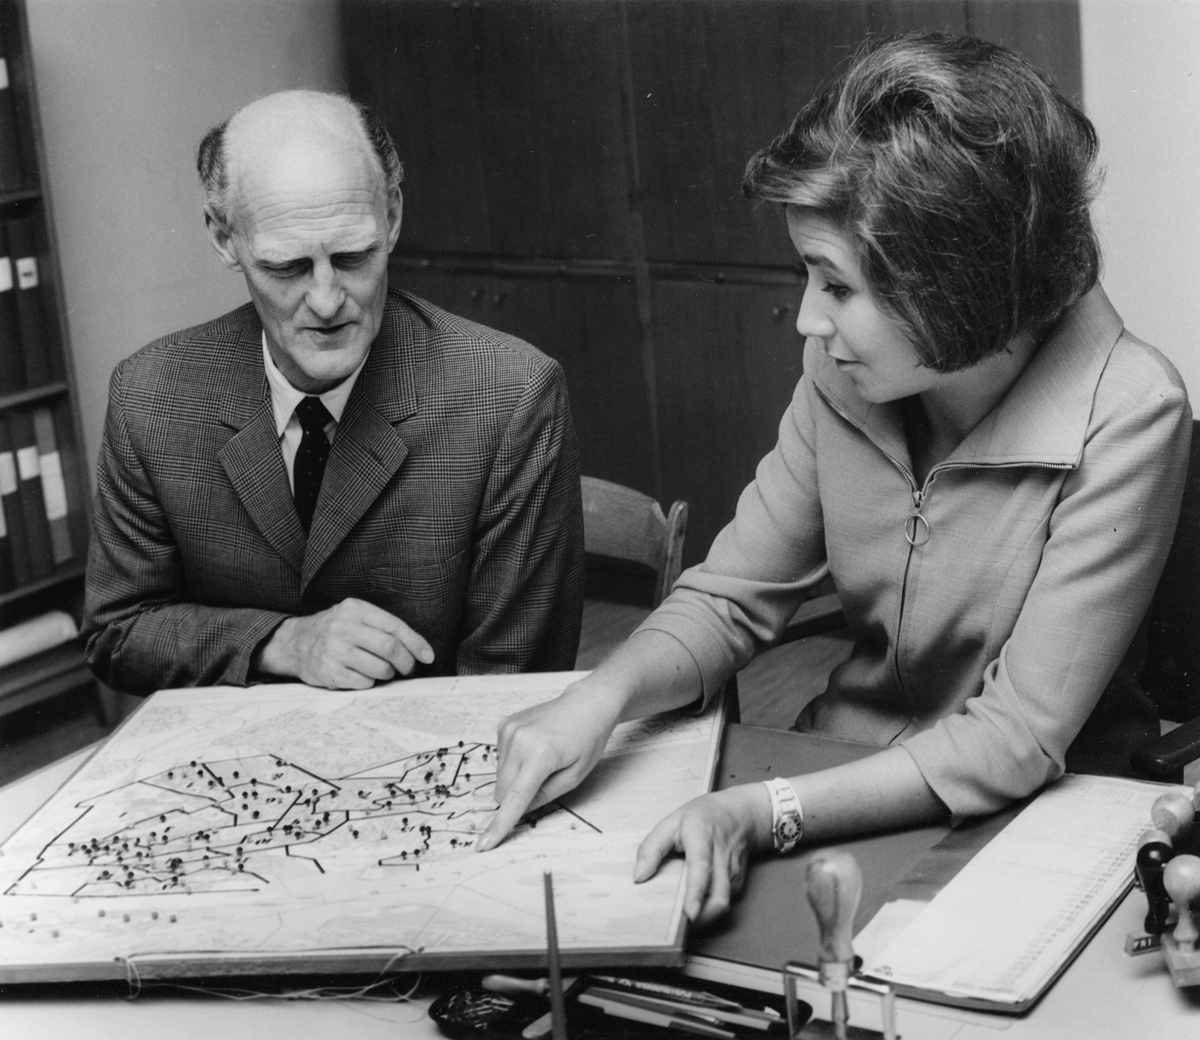 Postassistent Marta Kjellmodin och expeditionsförman Ture
Adestedt, Hägersten 1, diskuterar brevbäringsdistriktens utformning.
Foto 1968.